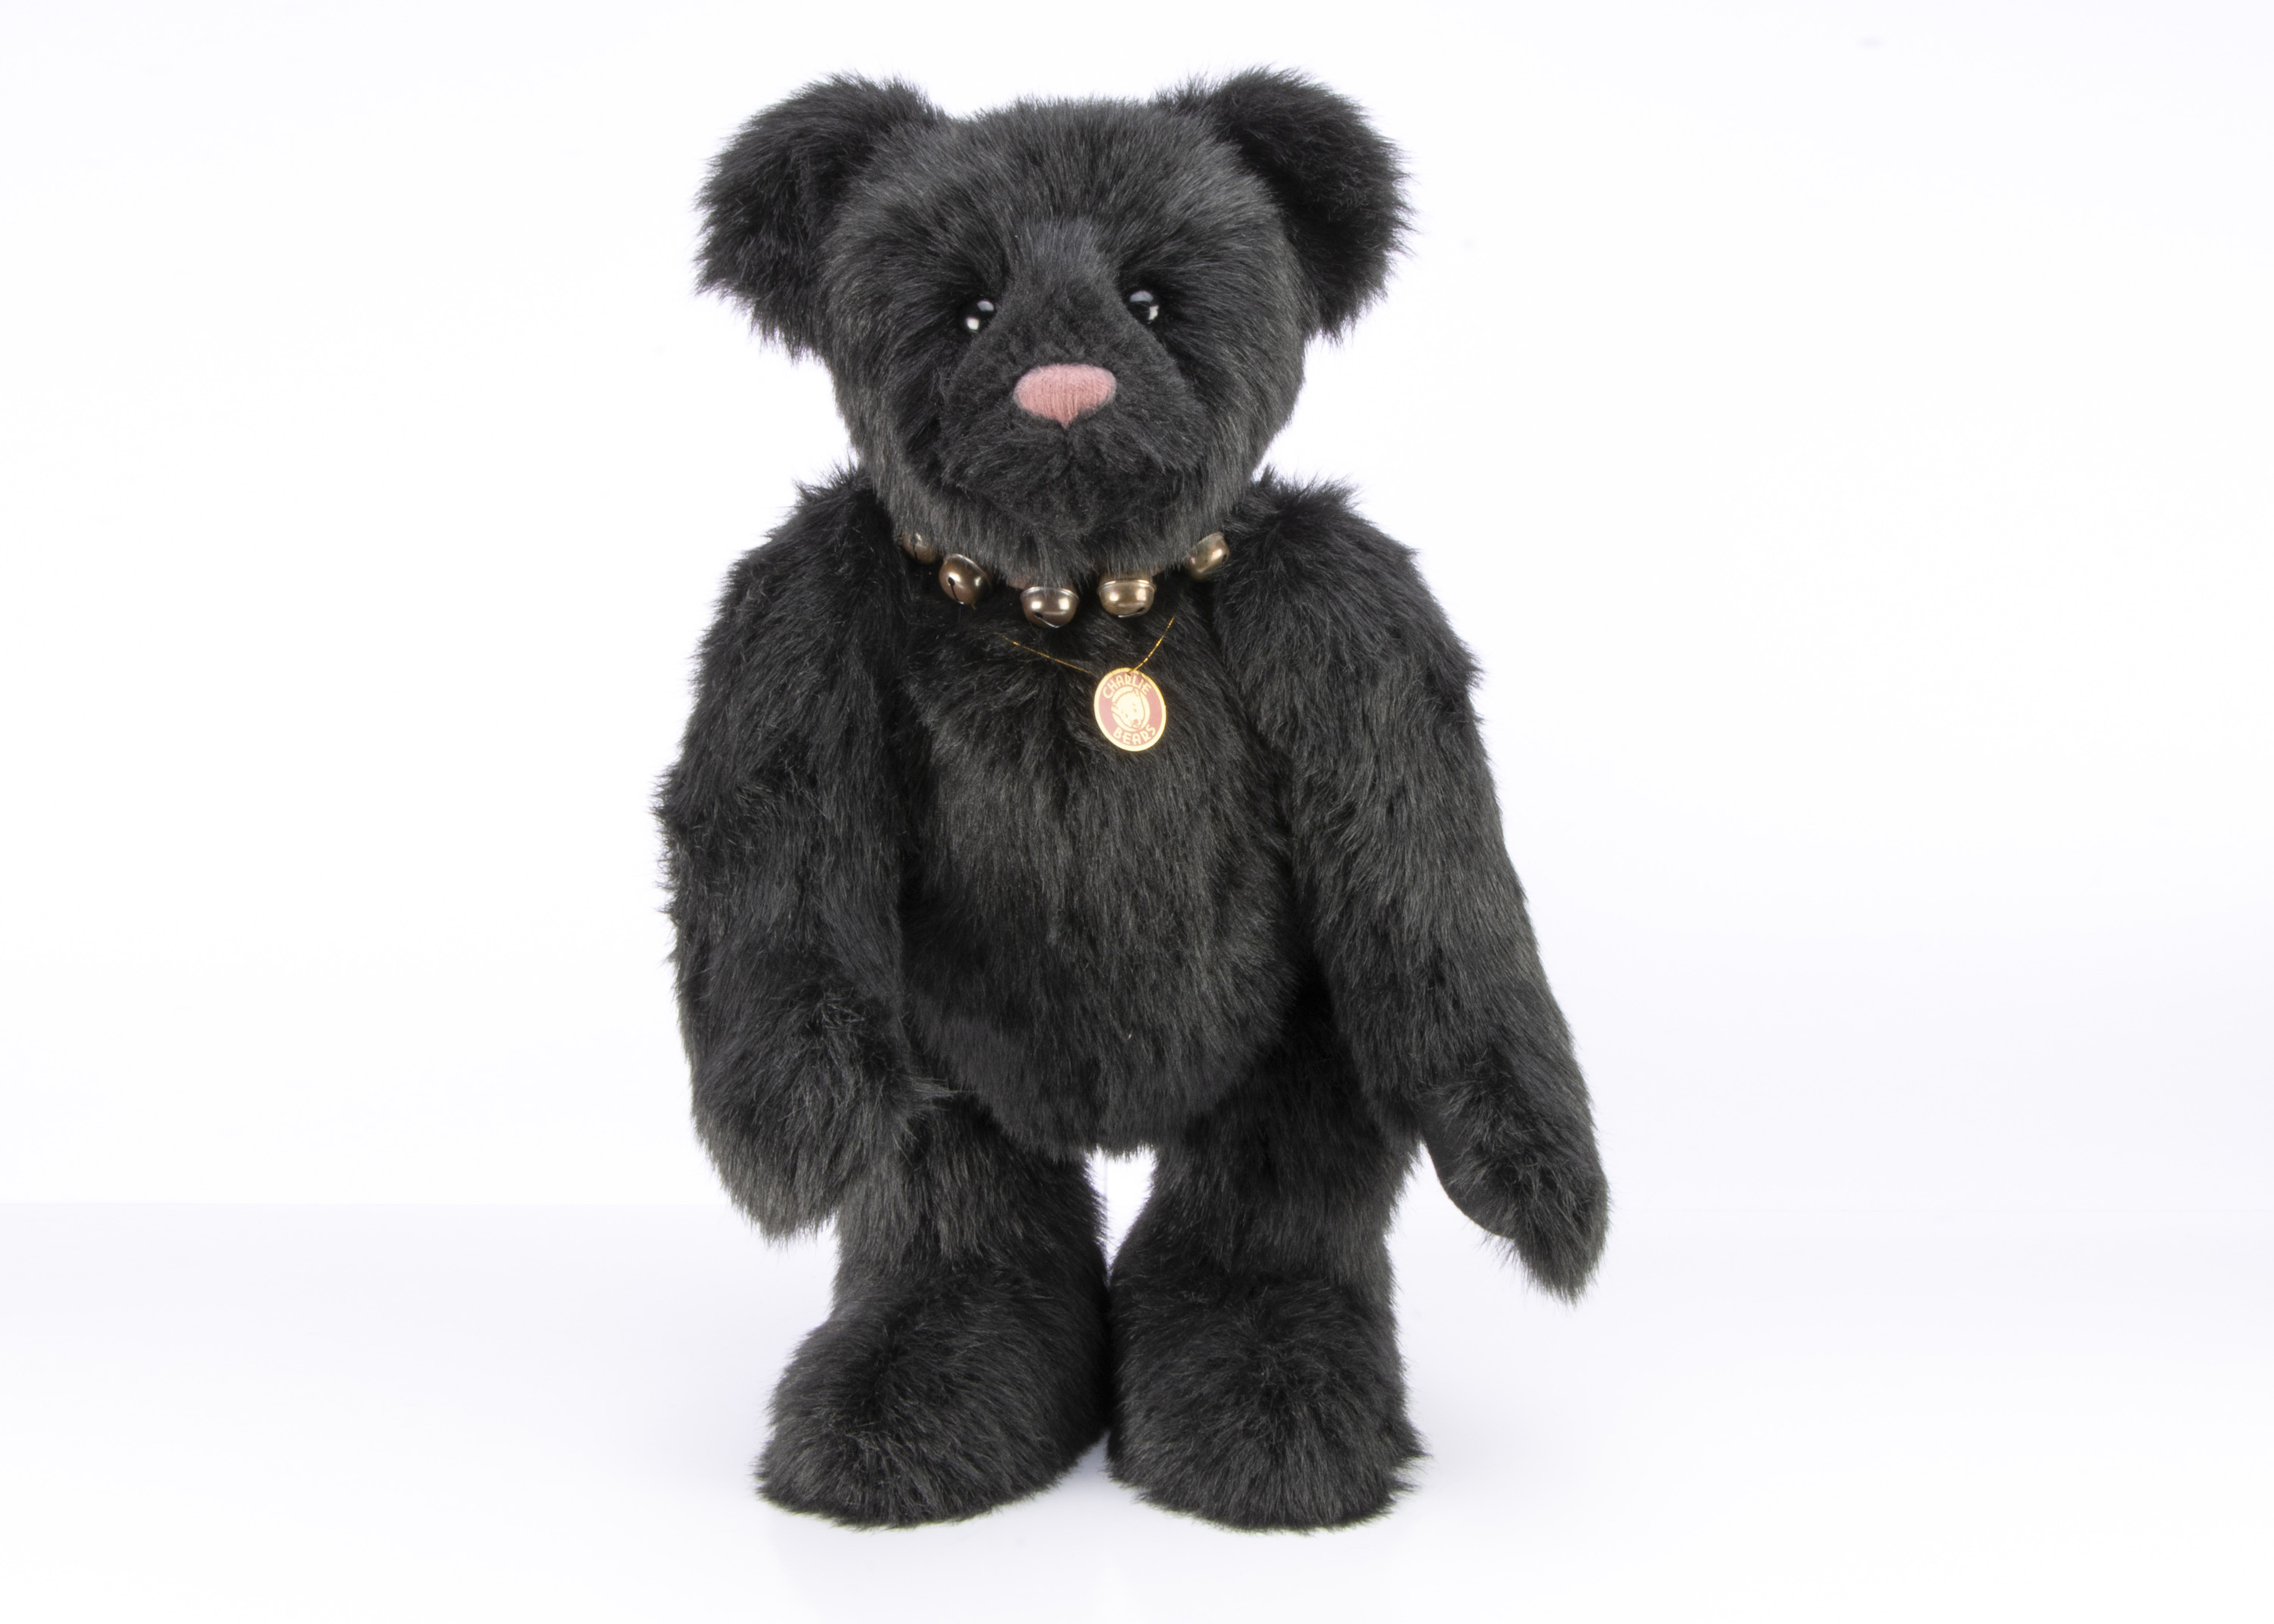 Dolls & Teddy Bears Auction